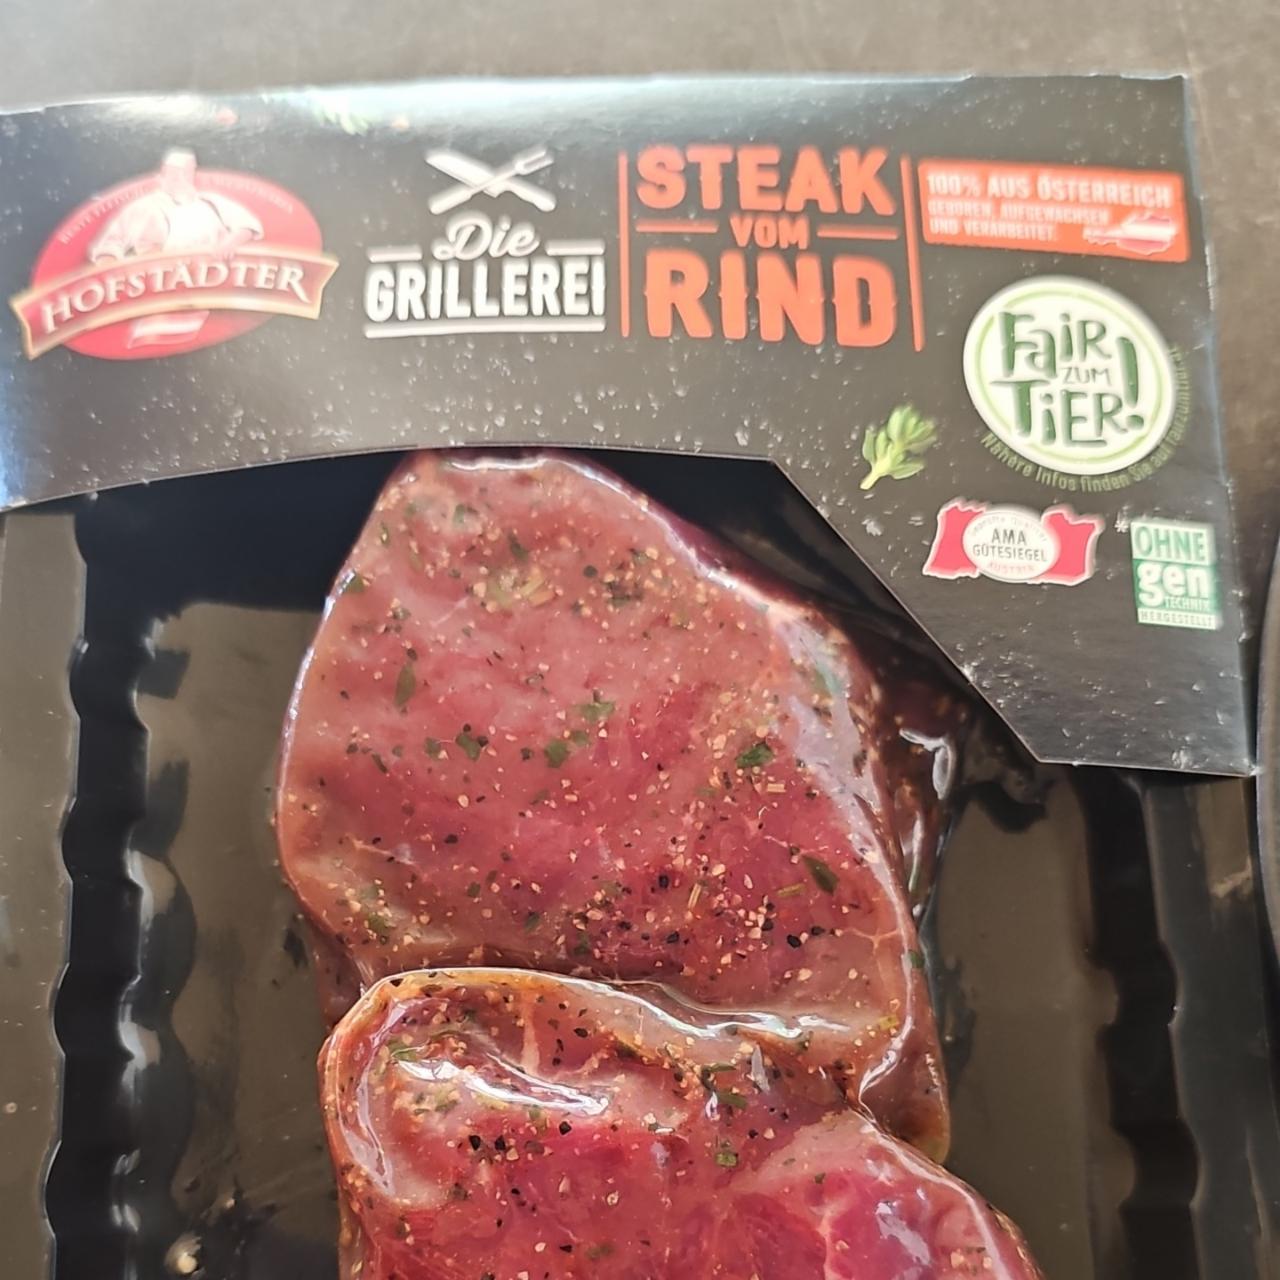 Fotografie - Steak vom Rind Die Grillerei Hofstädter